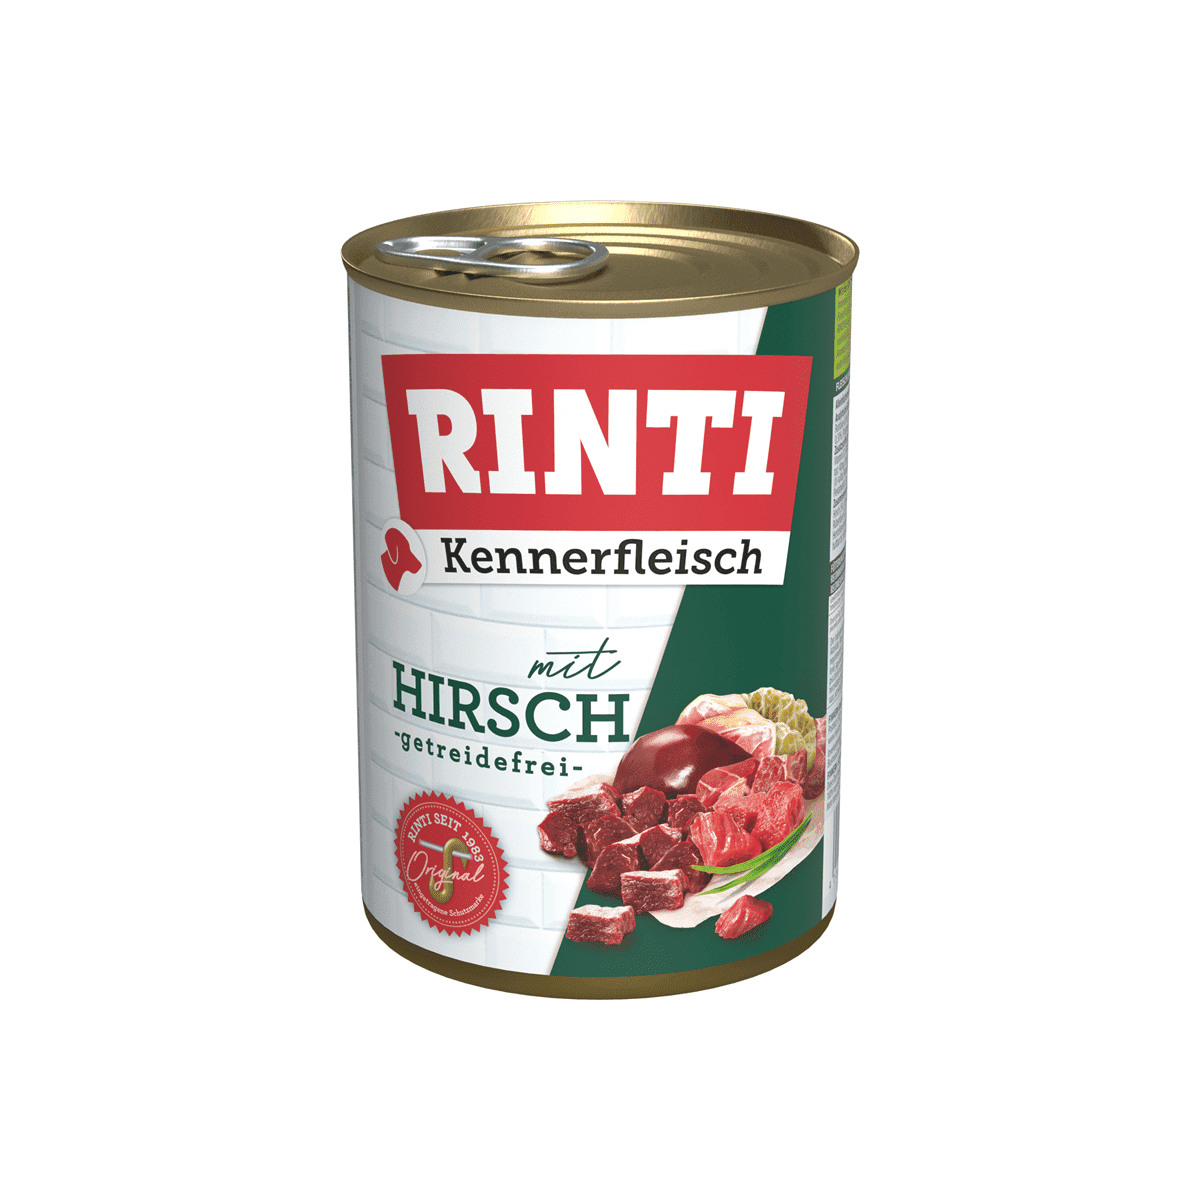 Rinti Kennerfleisch Hirsch - zoo.de